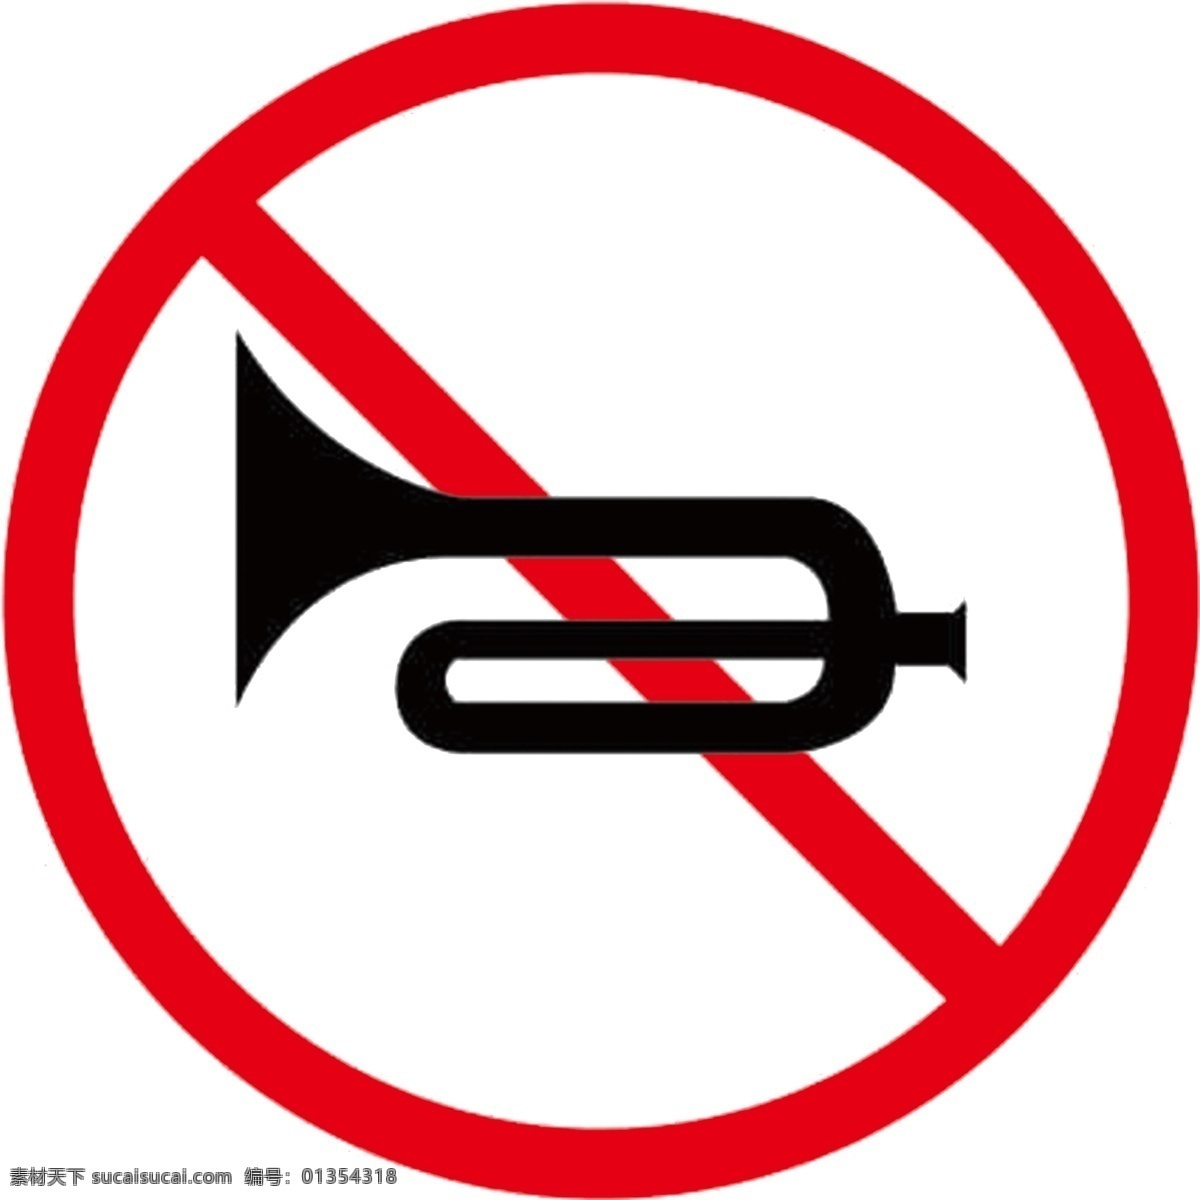 禁止 鸣笛 logo 禁止鸣笛标志 禁止鸣笛牌 交通指示牌 公共标识 标志图标